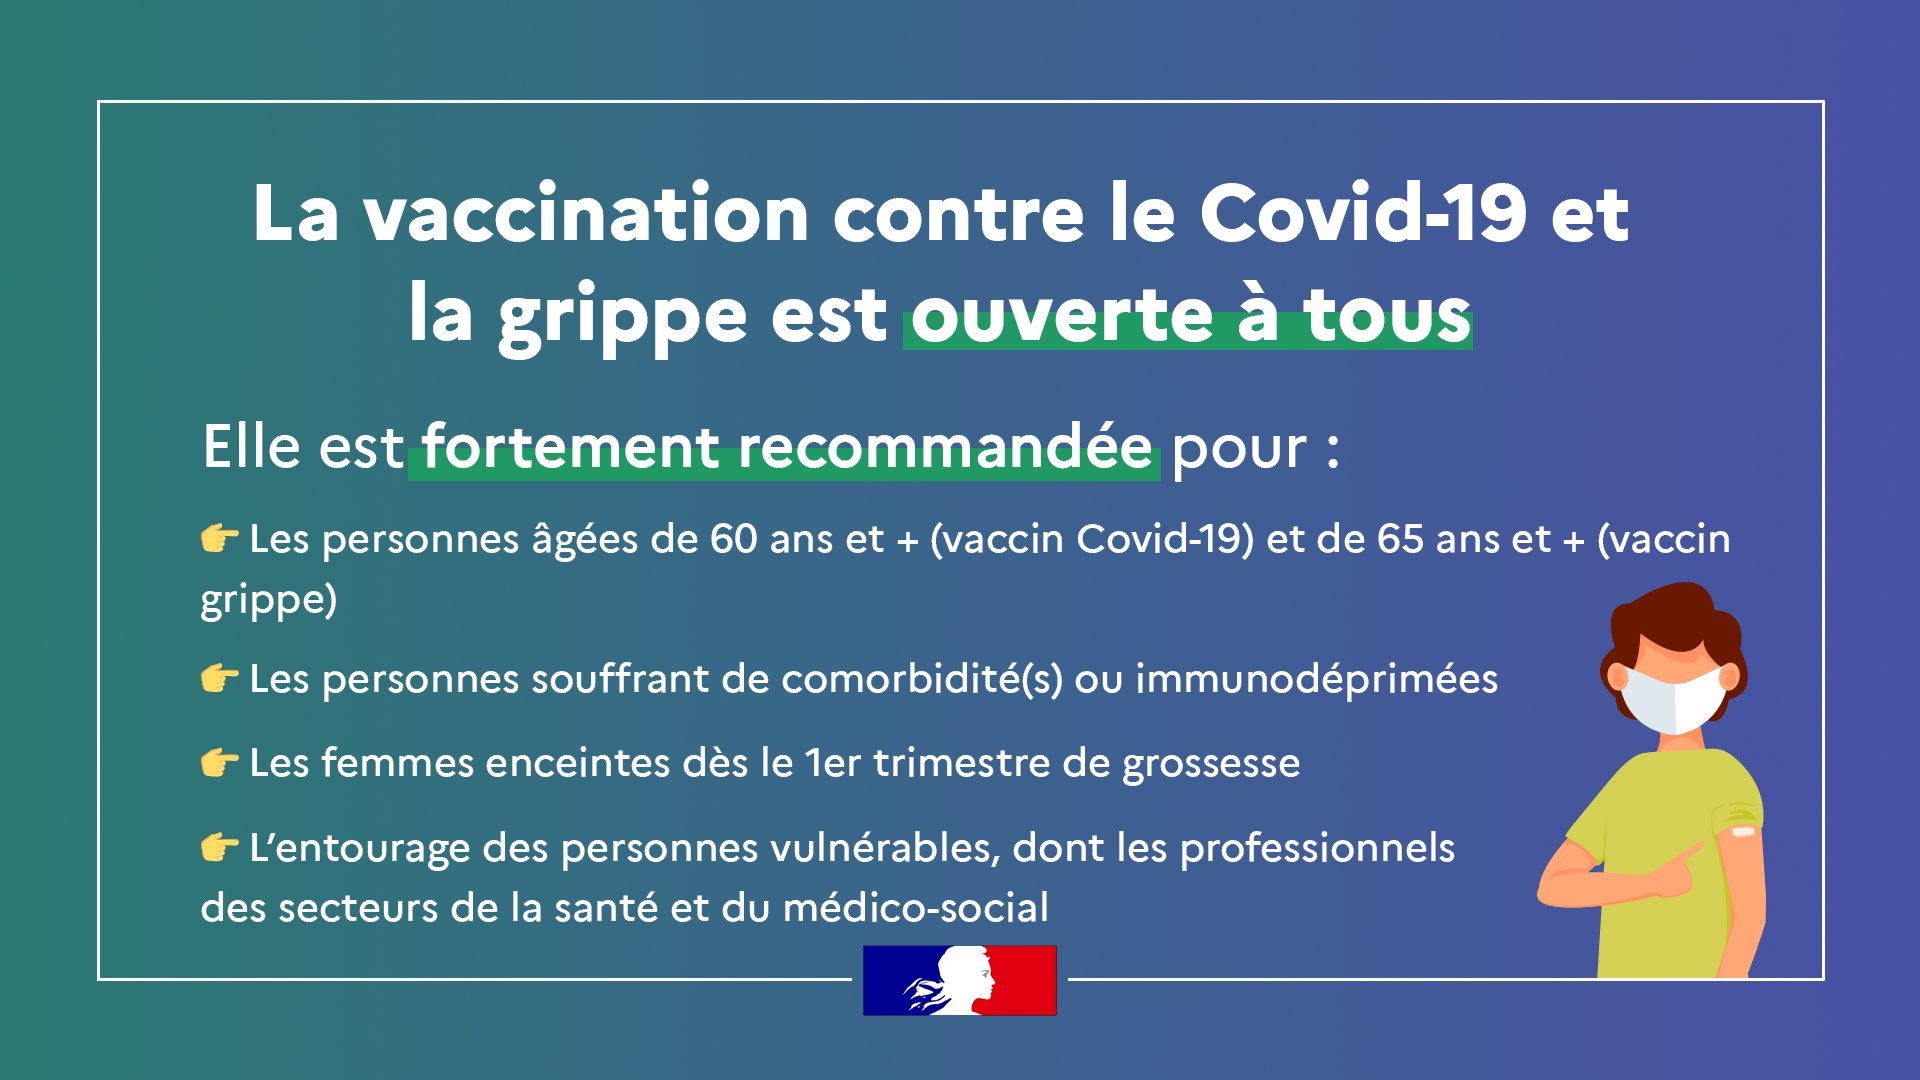 La vaccination contre la Covid-19 et la grippe ouverte à tous